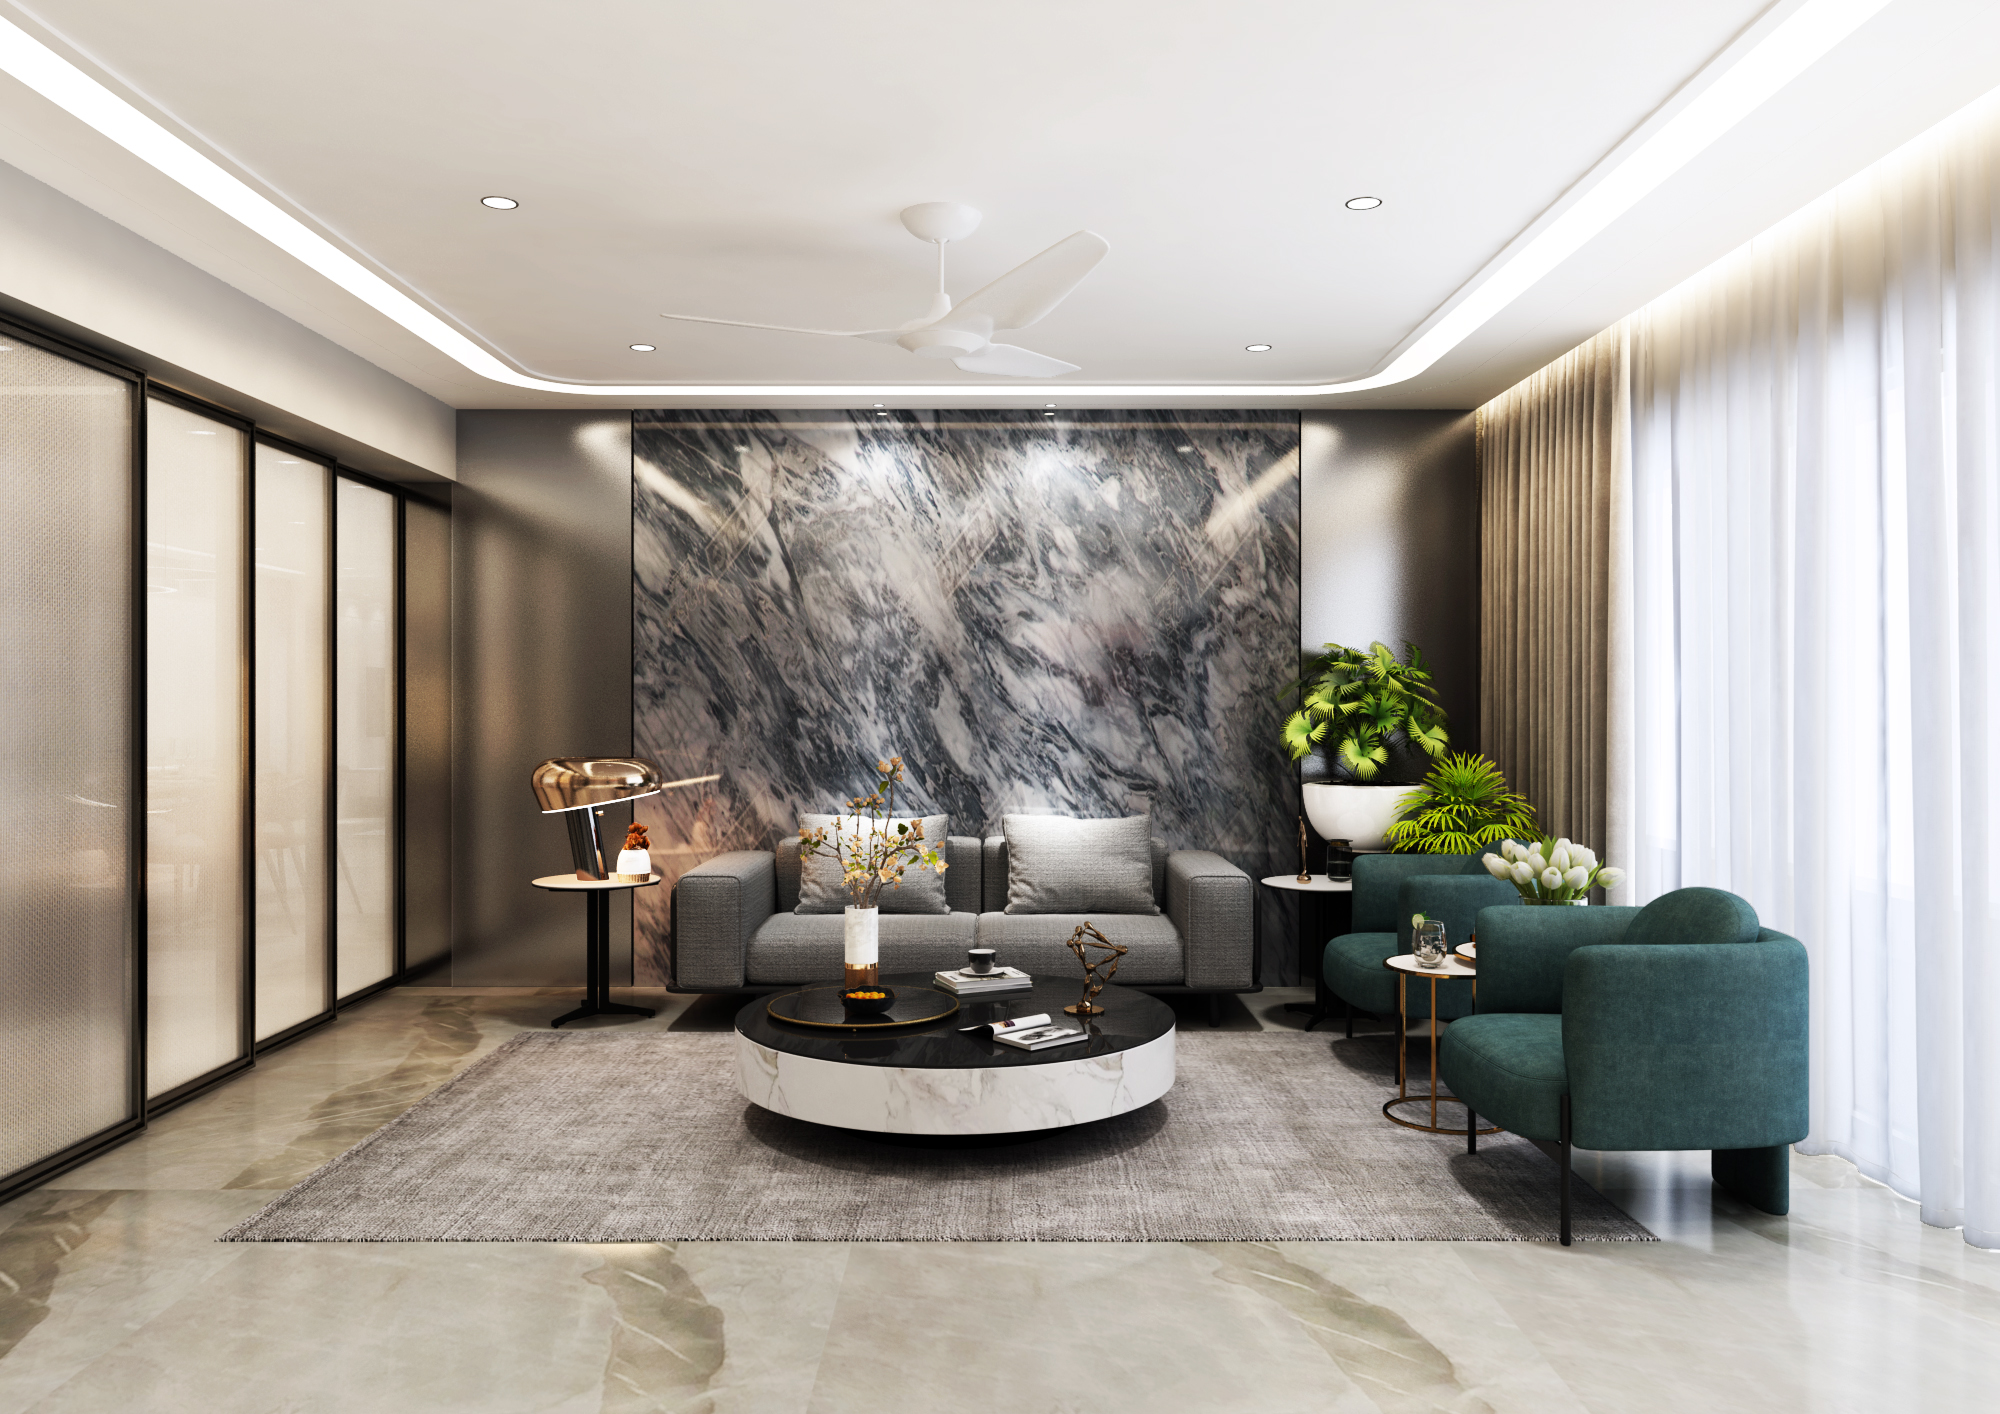 Redesigning Comfort & Luxury- Roiretni Interior Design Studio